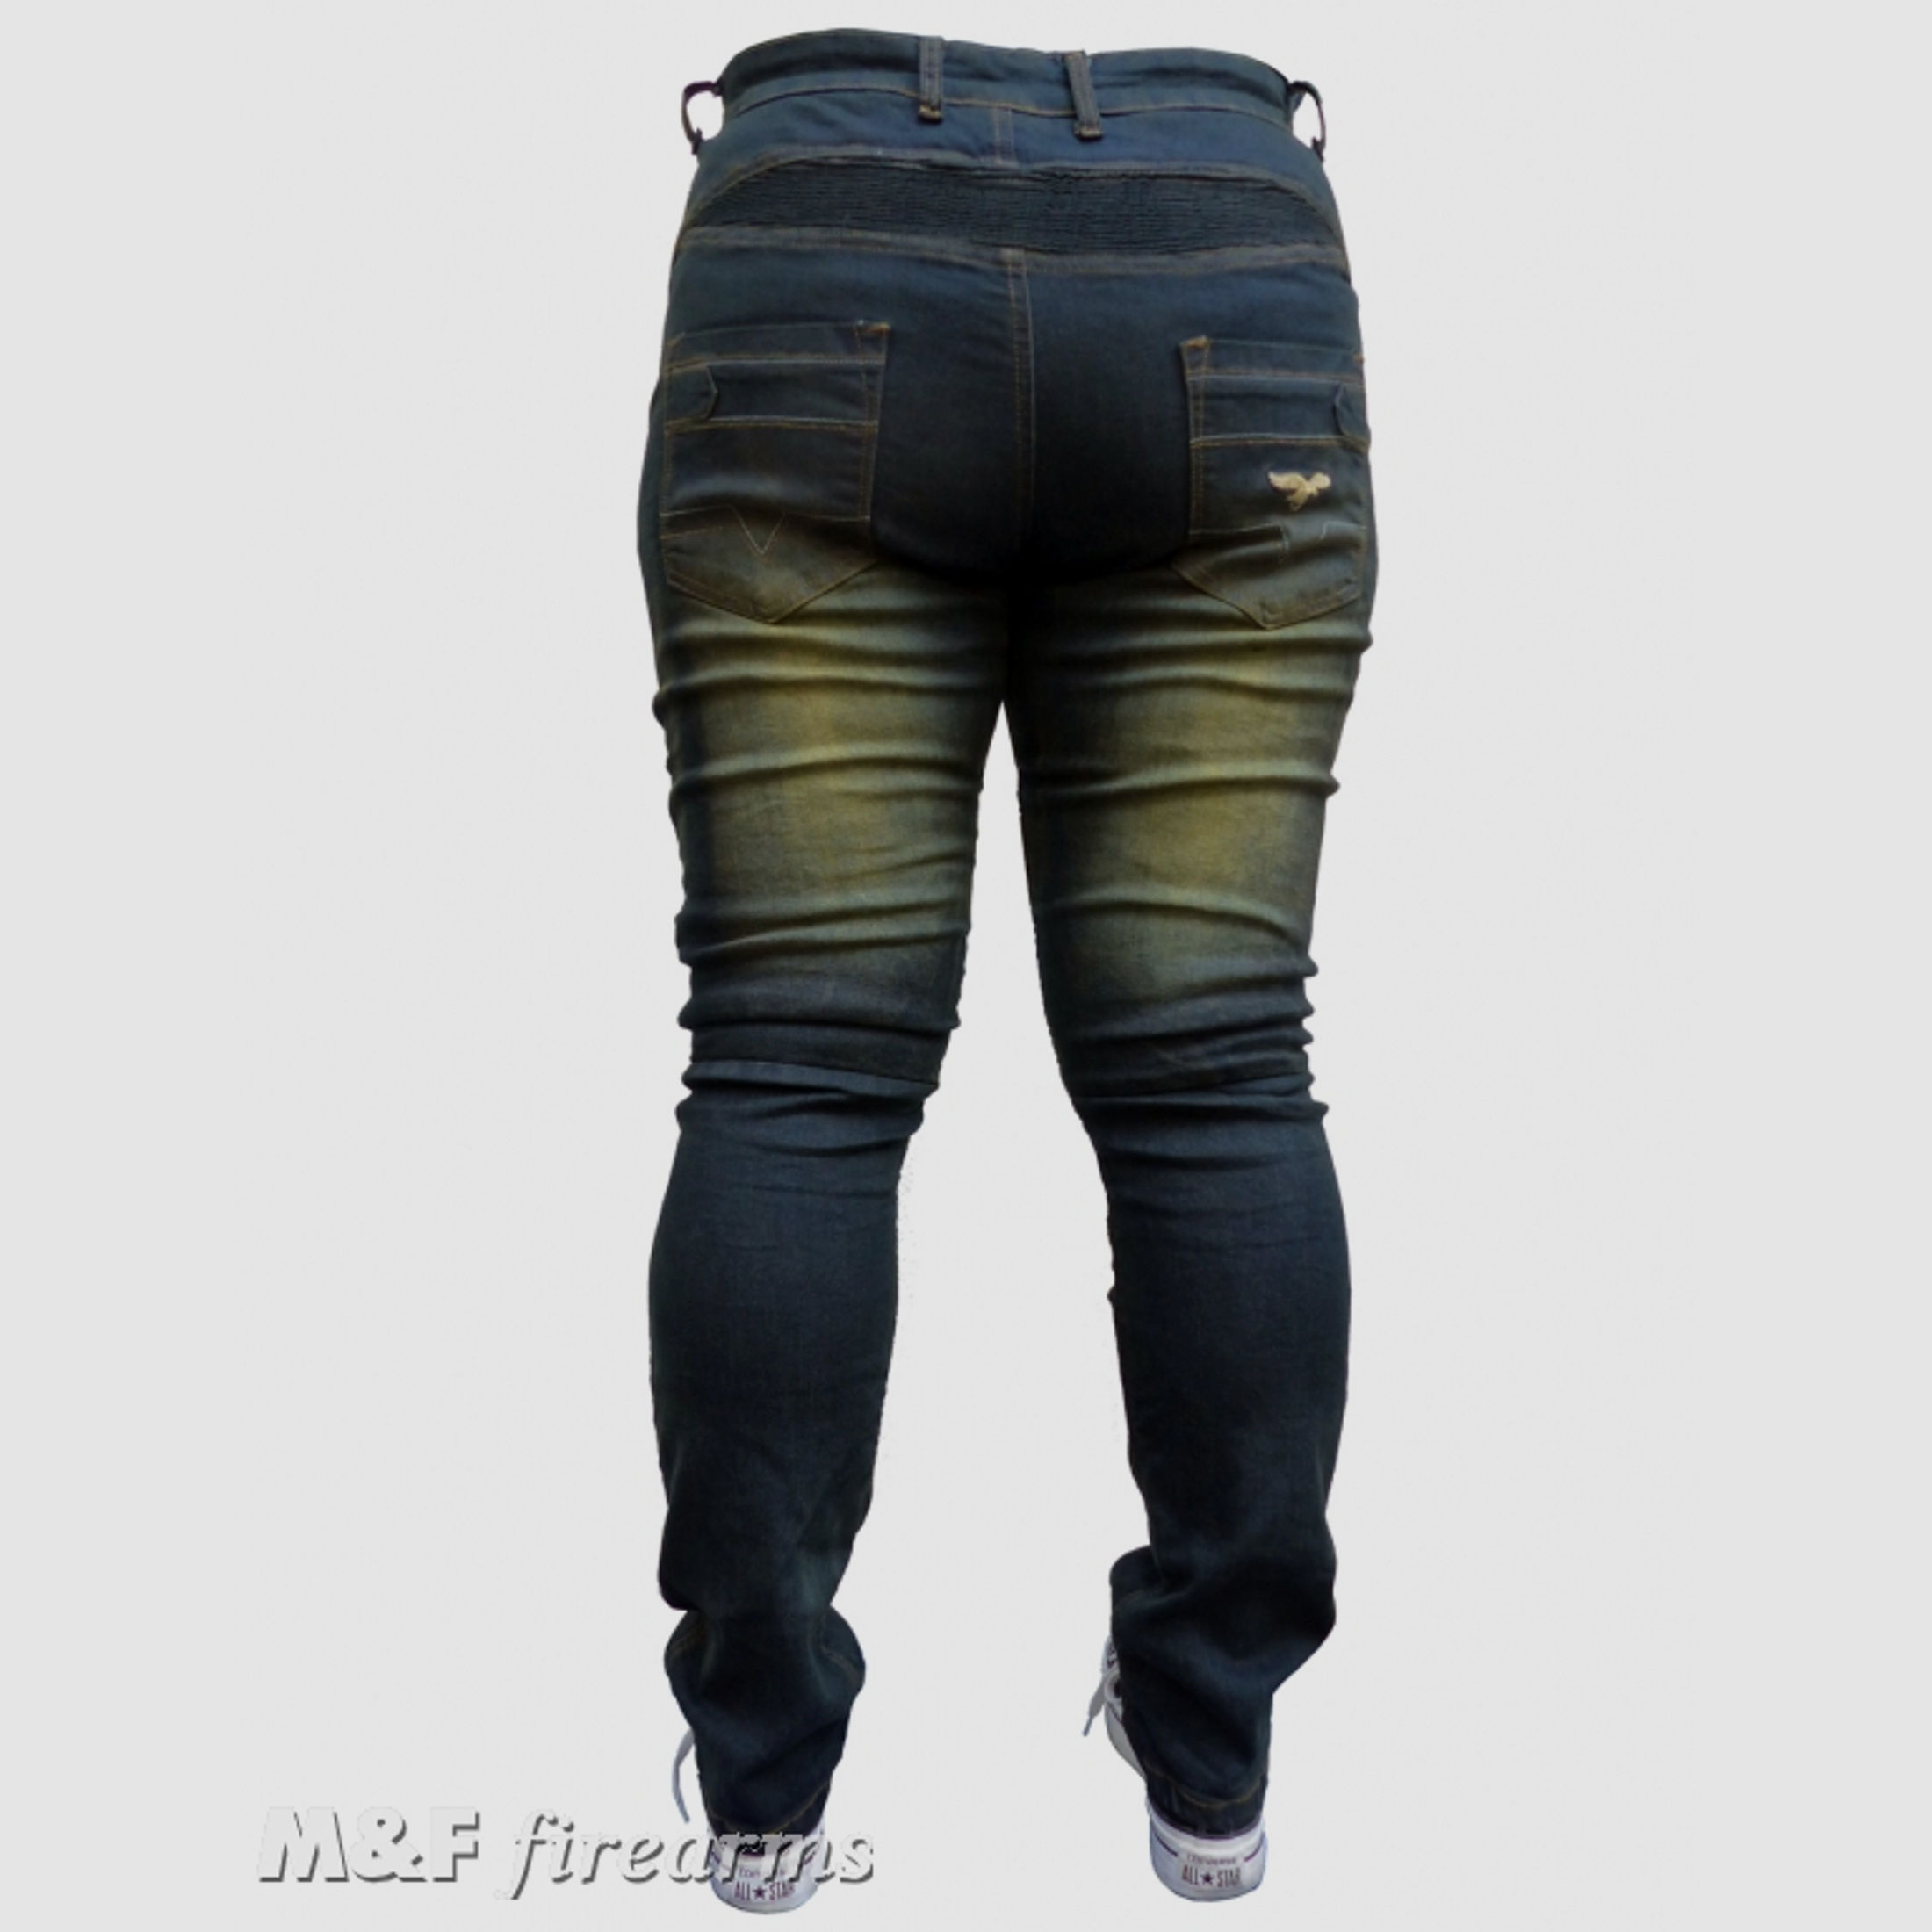 Damen Road- Jeans "Stonewashed" in Antik- Optik DENIM- Stretch- Gewebe mit Netz- und Aramidfaser- Futter sowie Knieprotektoren